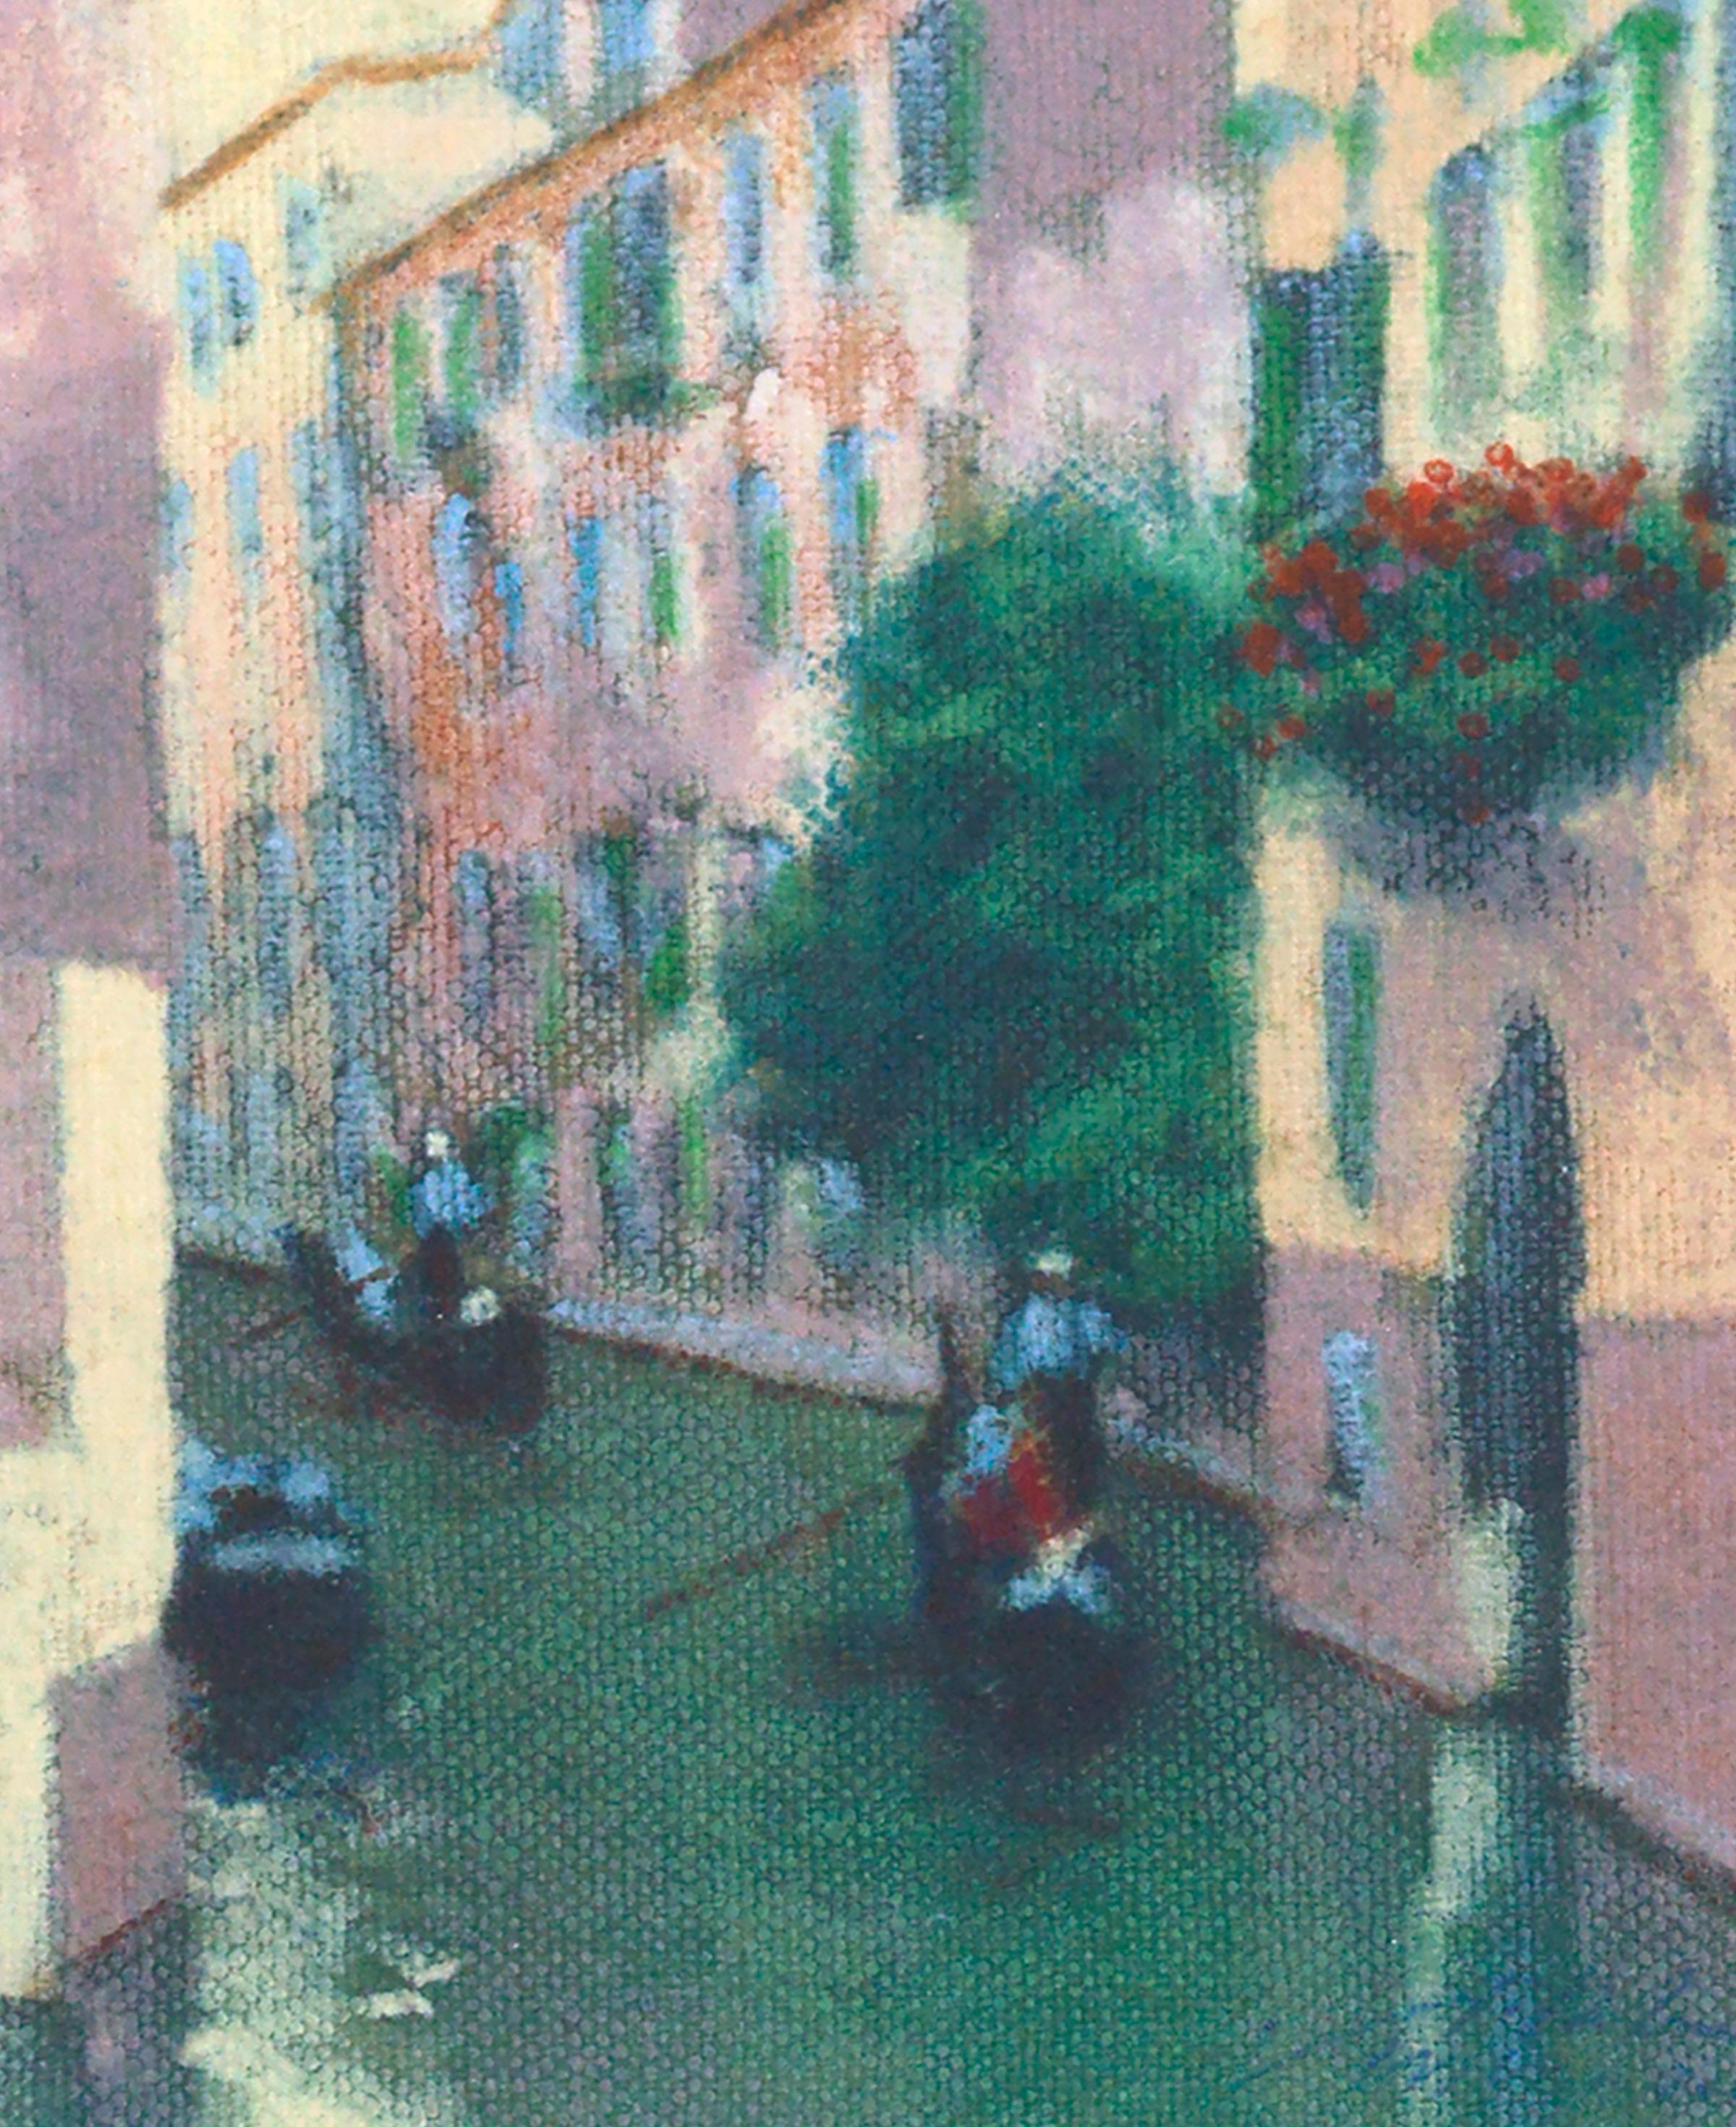 Canal avec gondoles - Venise, Italie Paysage figuratif  - Pointillisme Painting par Unknown